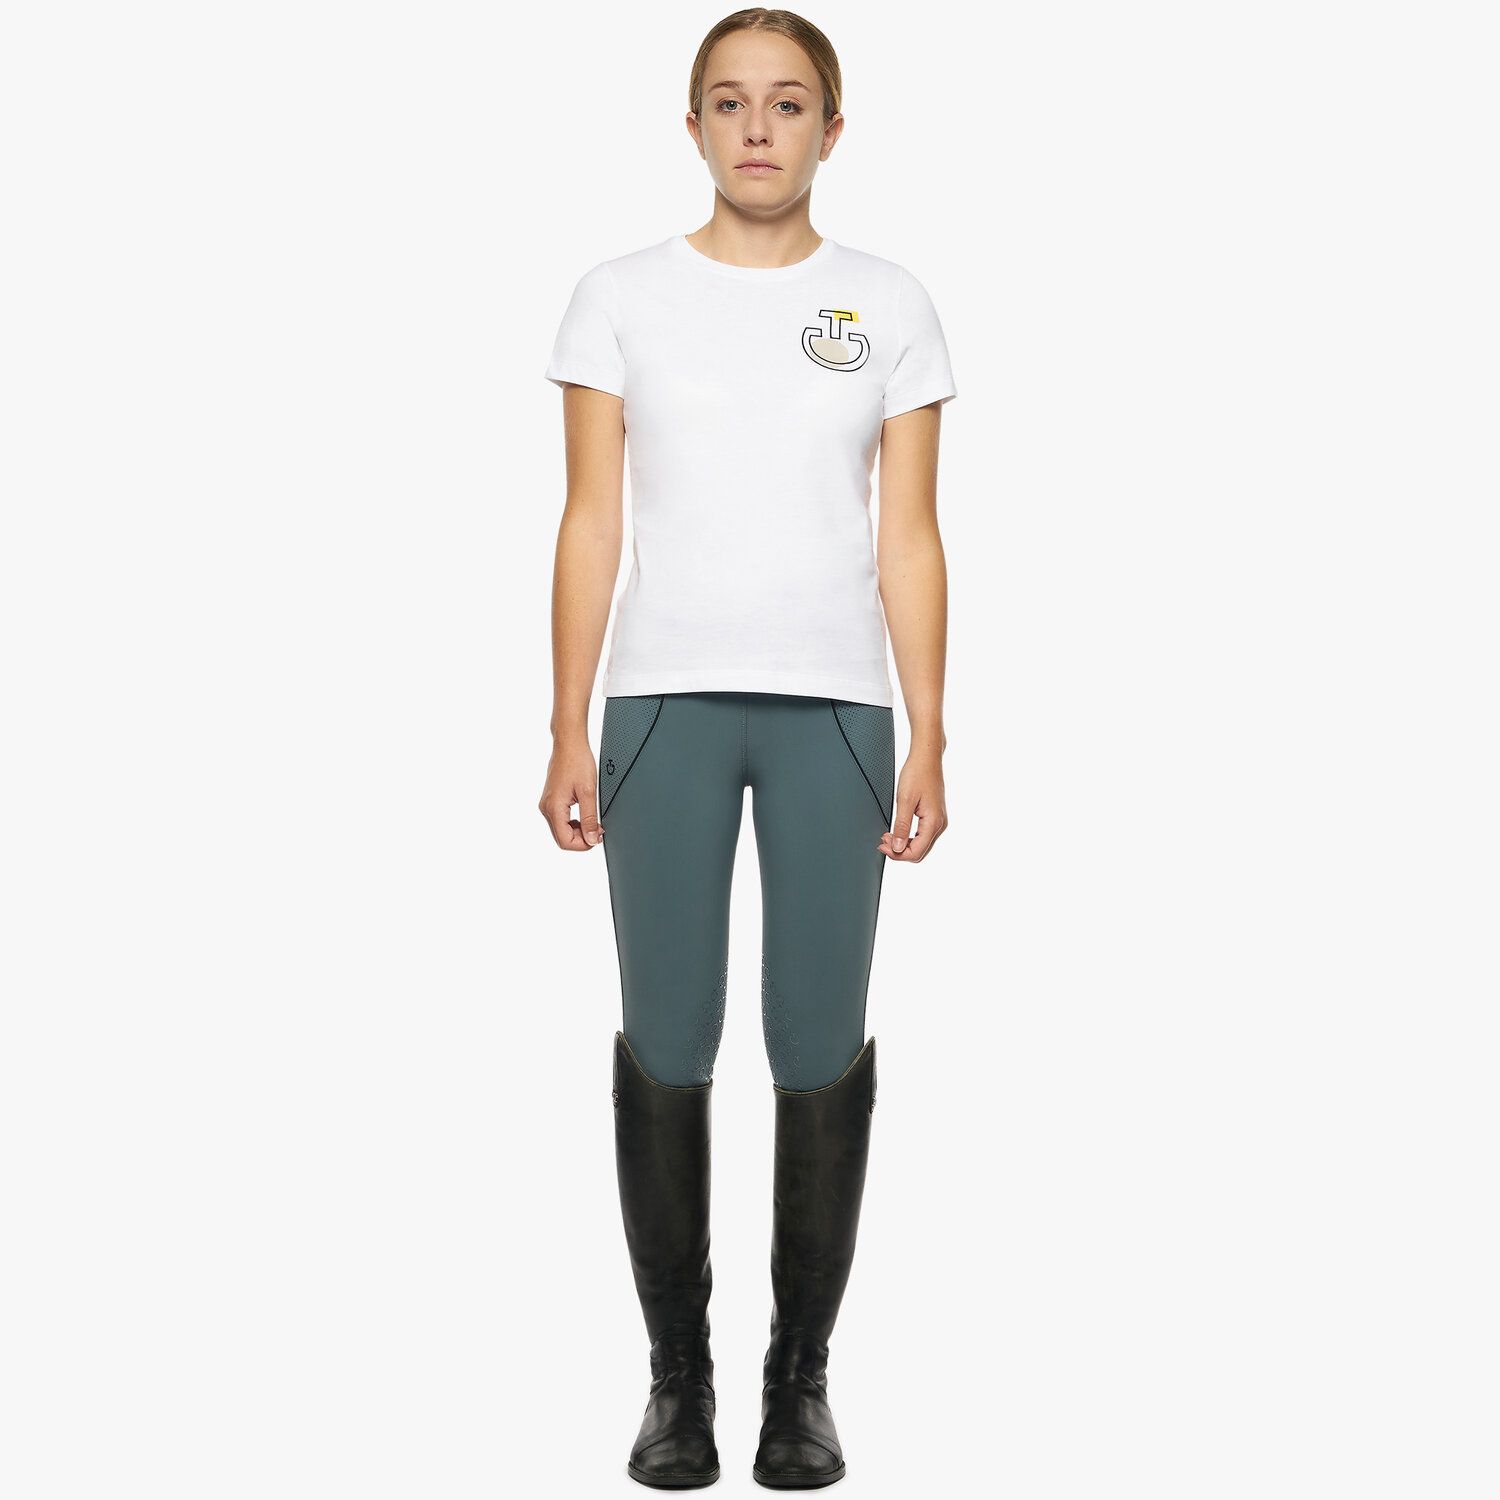 Cavalleria Toscana Girls’ cotton jersey t-shirt WHITE-10